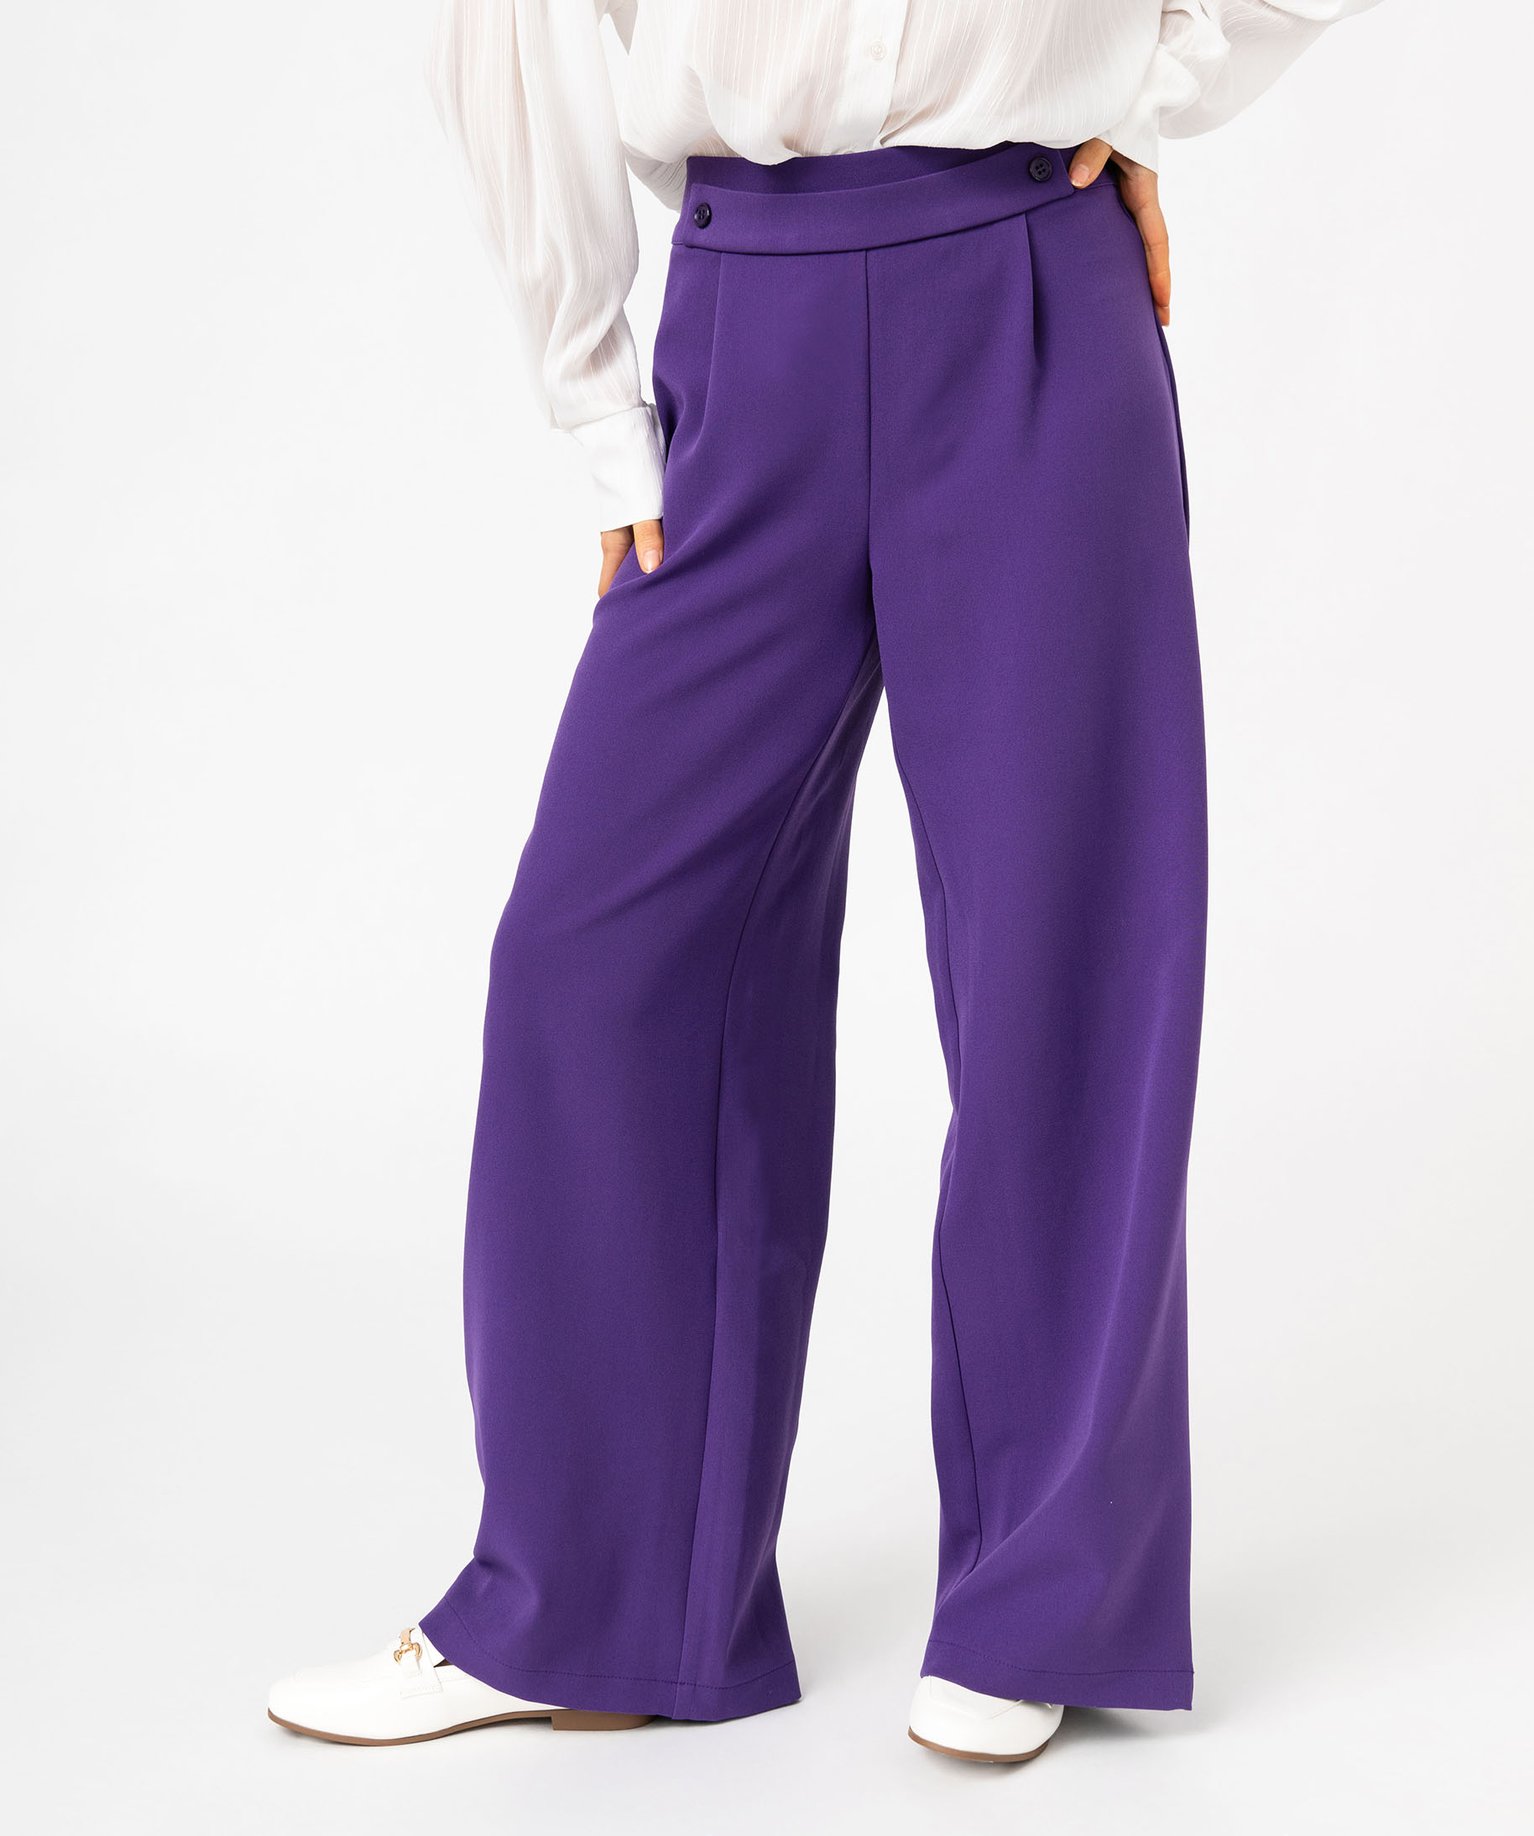 pantalon large avec ceinture fantaisie femme violet pantalons